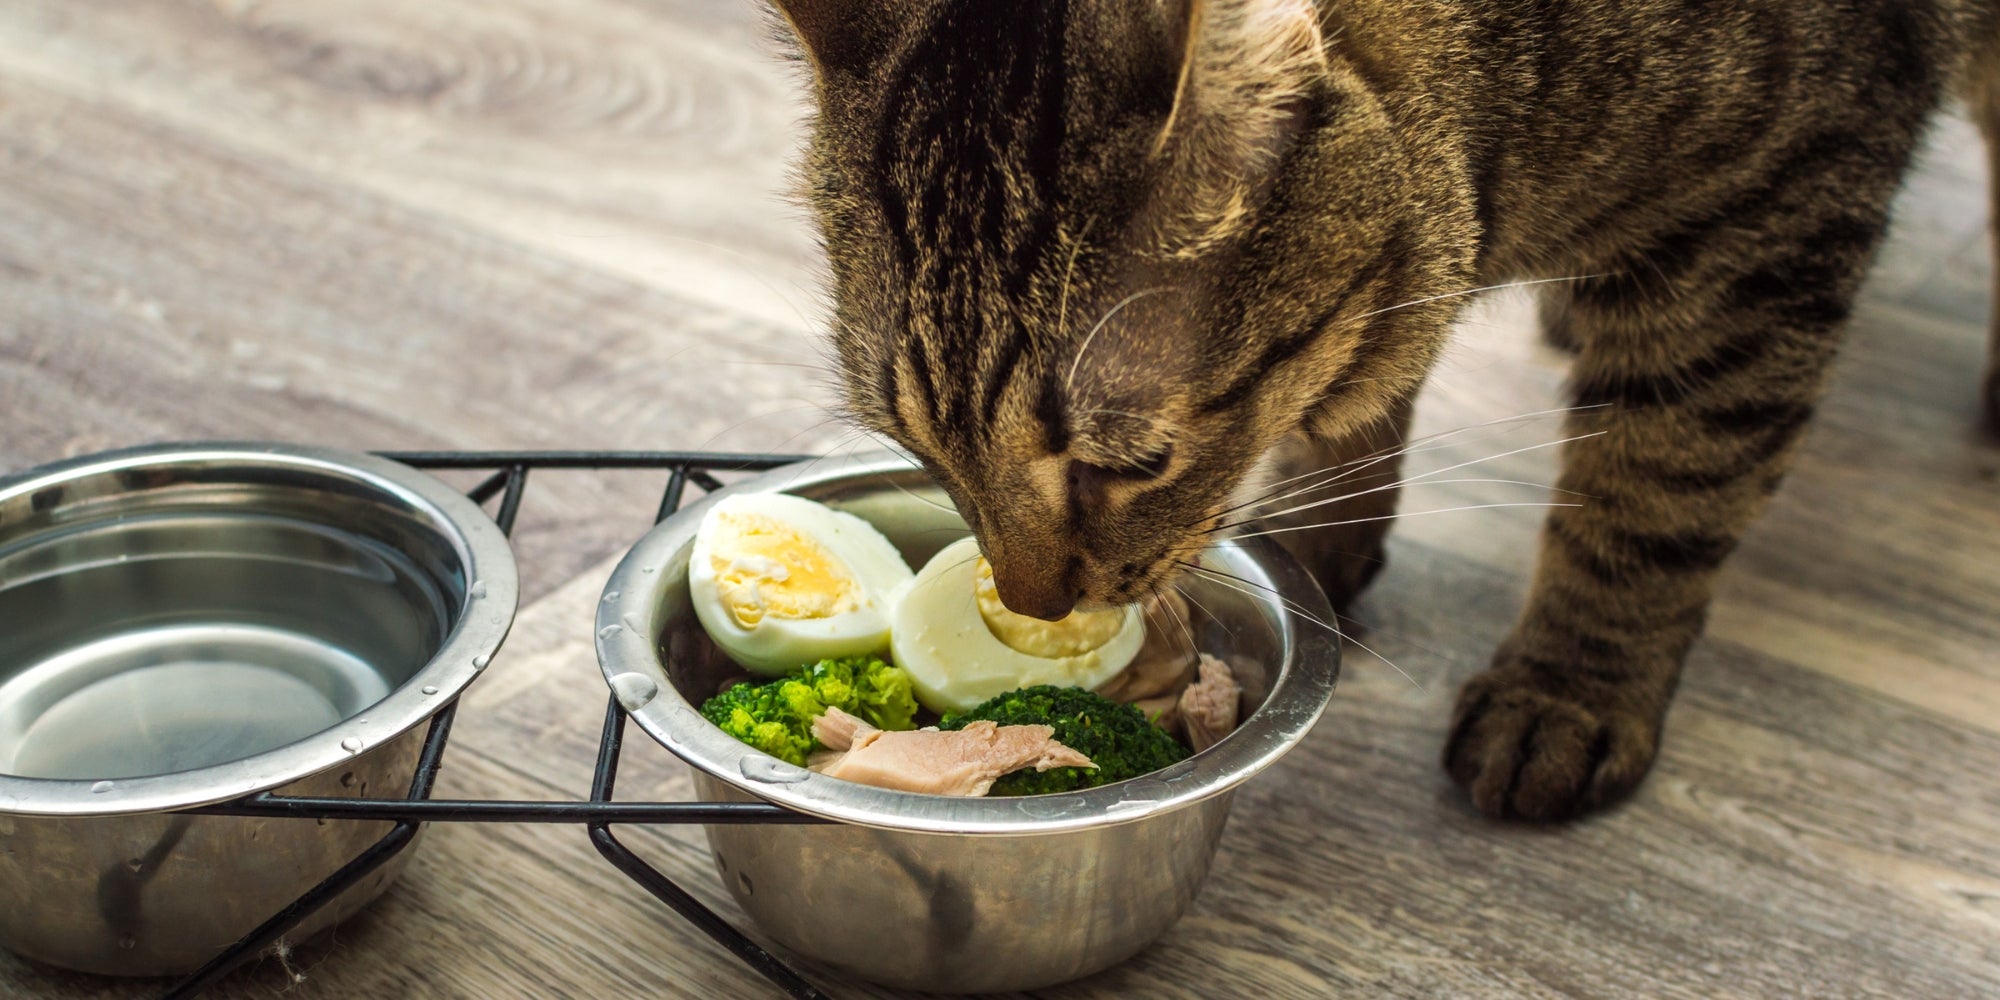 Gato hambriento come comida fresca y natural. Concepto de comida y dieta para gatos